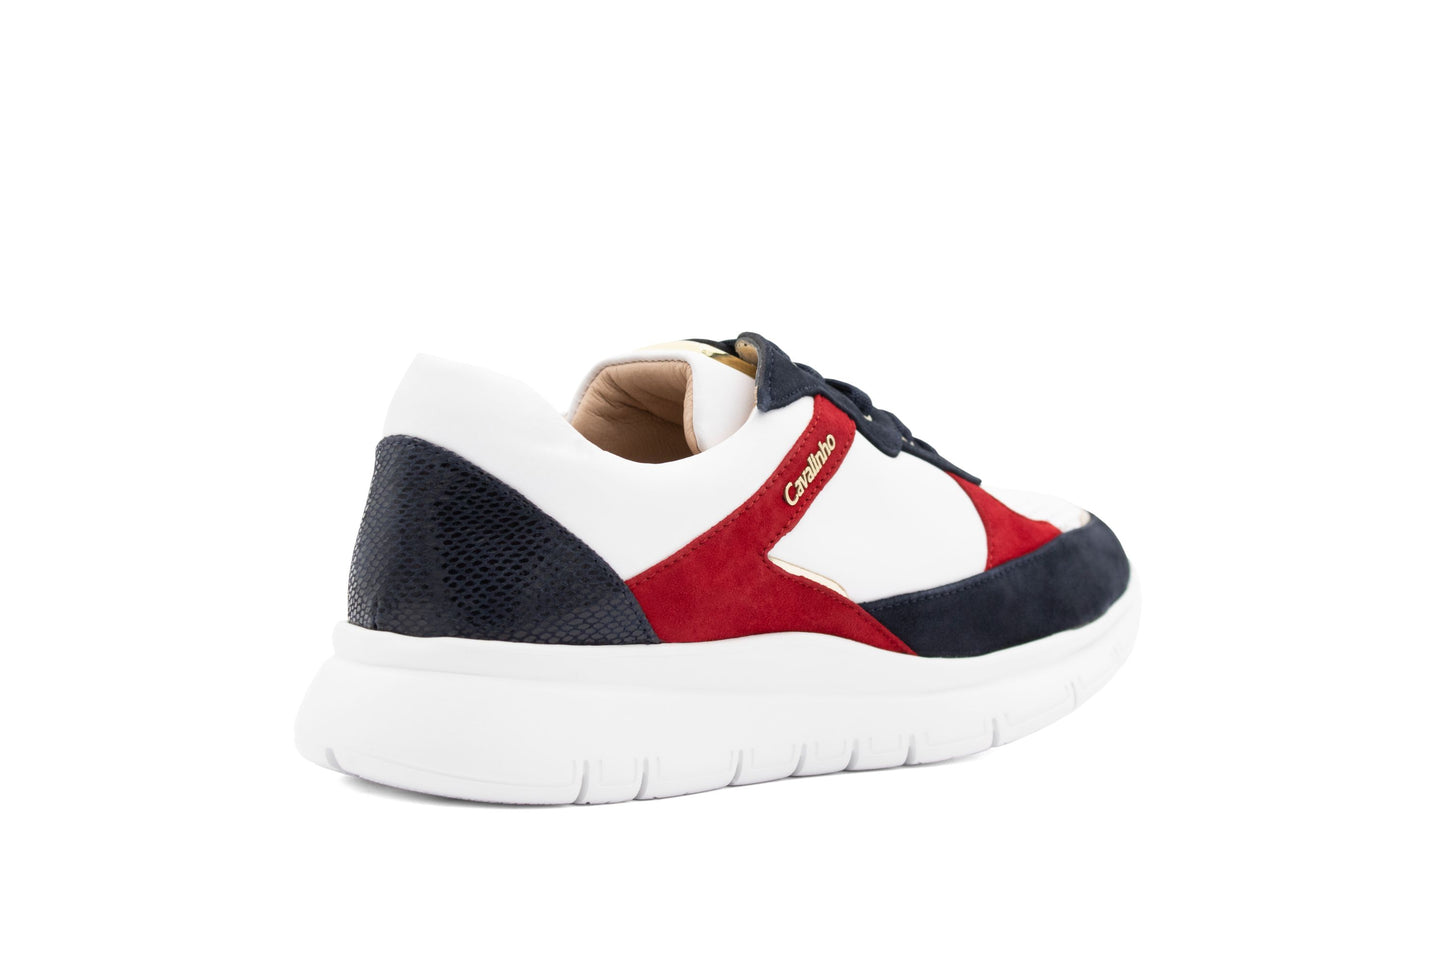 Cavalinho Marinero Sneakers - Size 6 - - 48010075.22_3